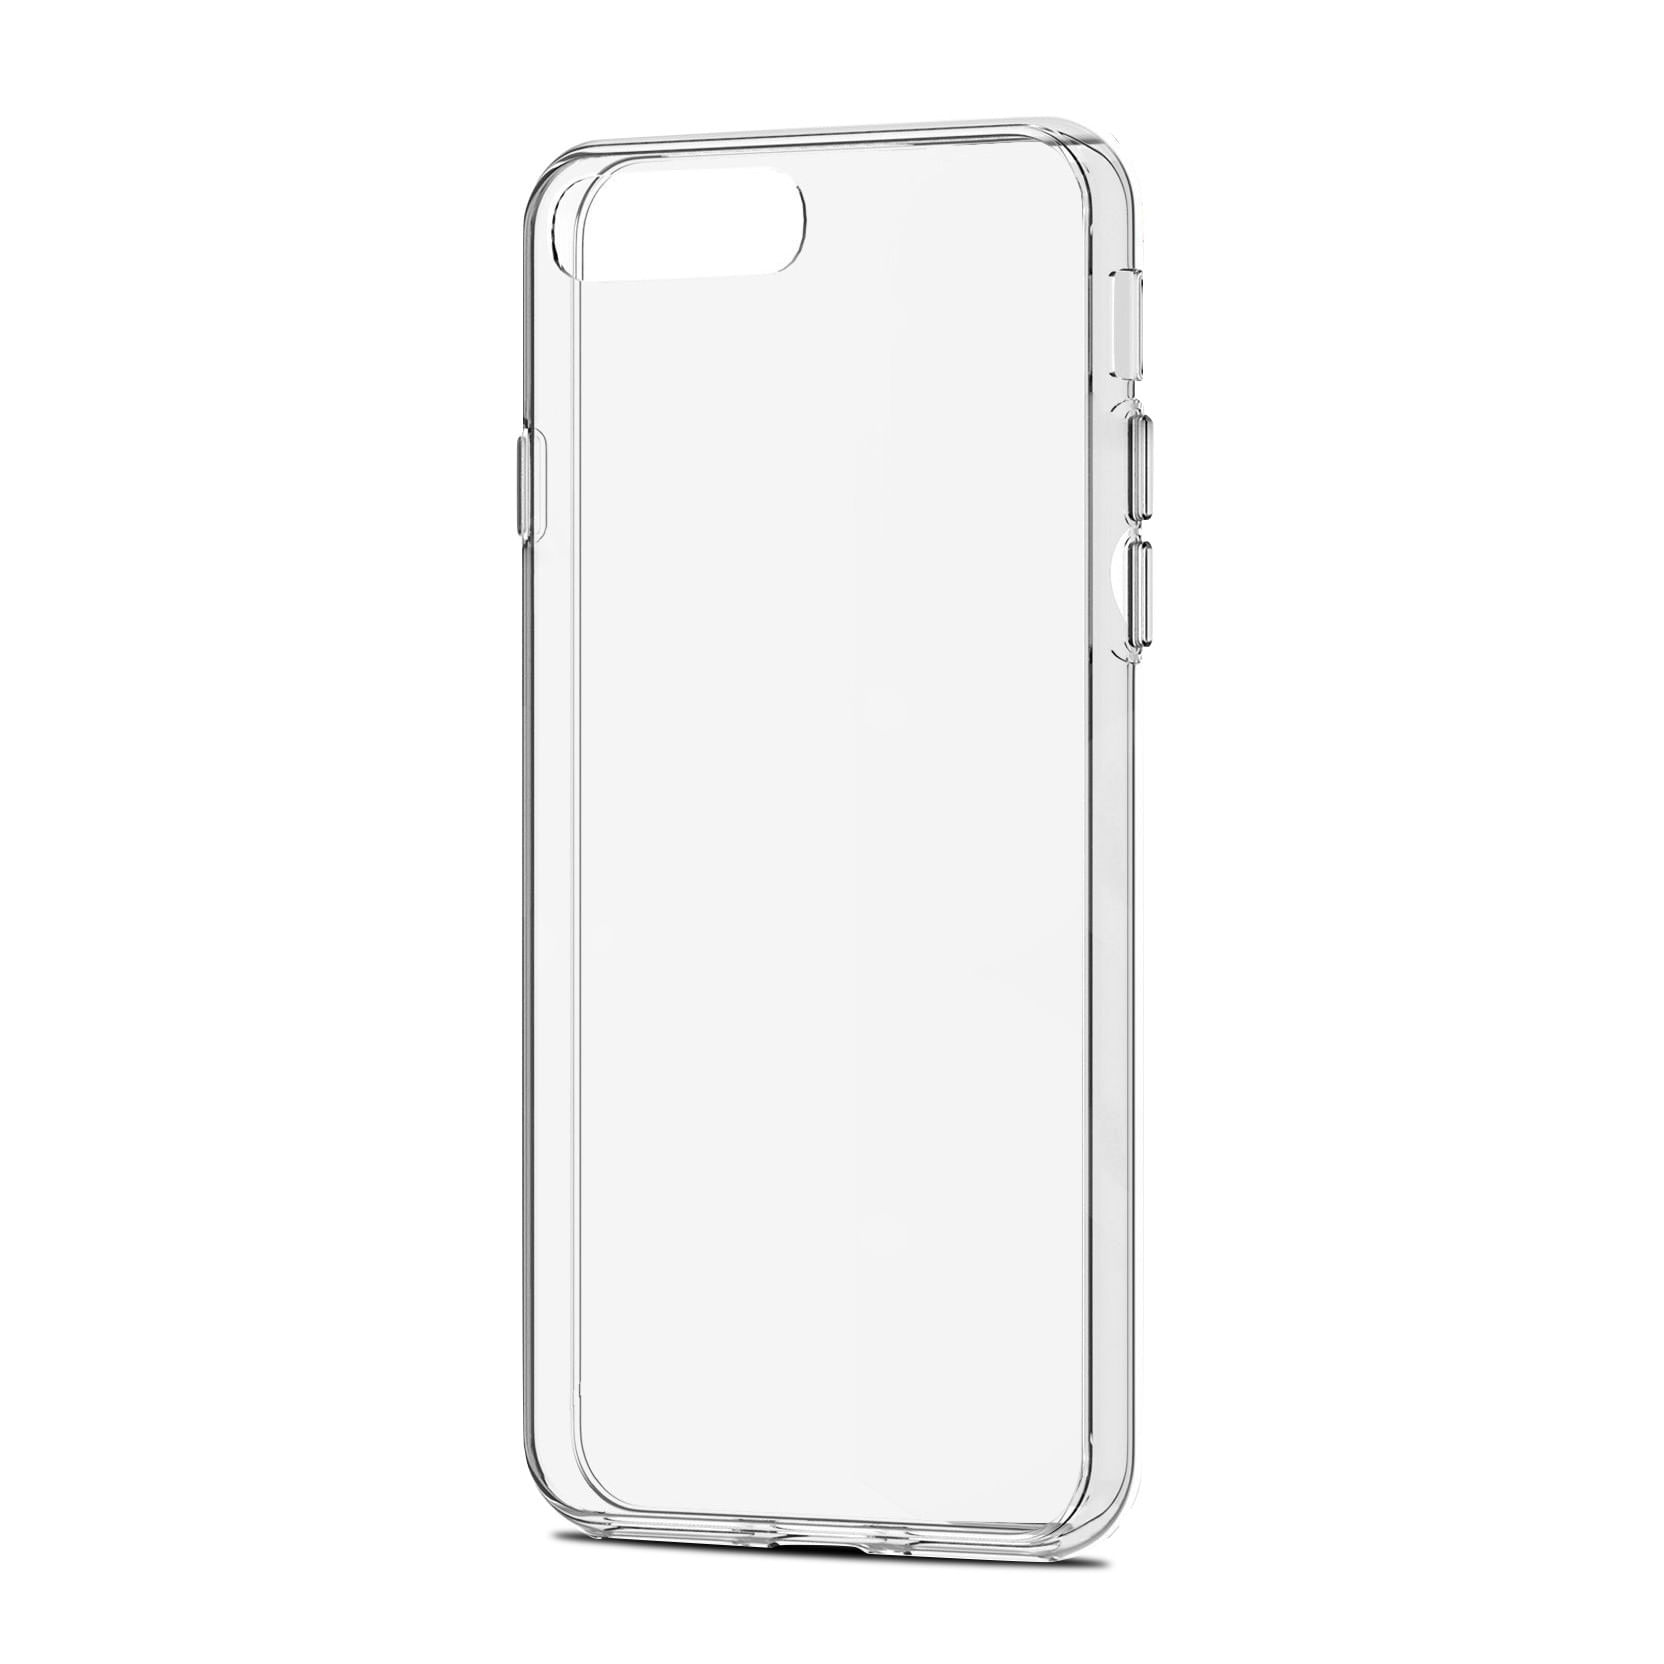 Silicona Transparente Iphone 6-6s